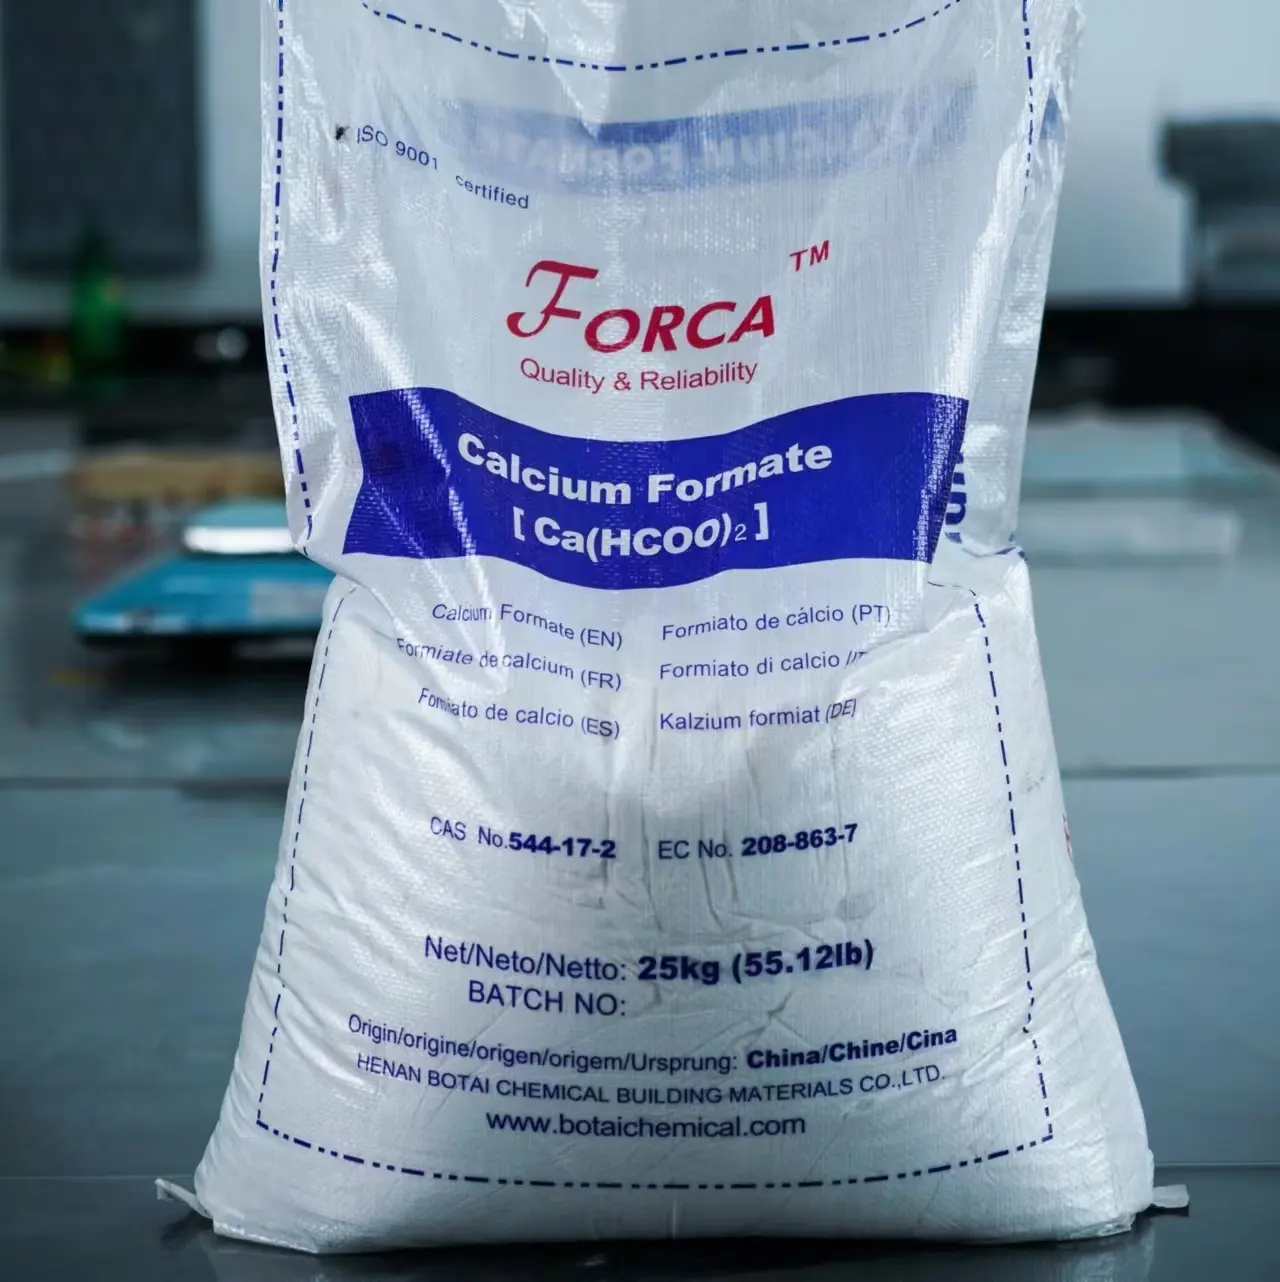 544-17-2 FORCA formiato di calcio in polvere per migliorare la qualità della carne additivo per mangimi per polli da carne formiato di calcio henan